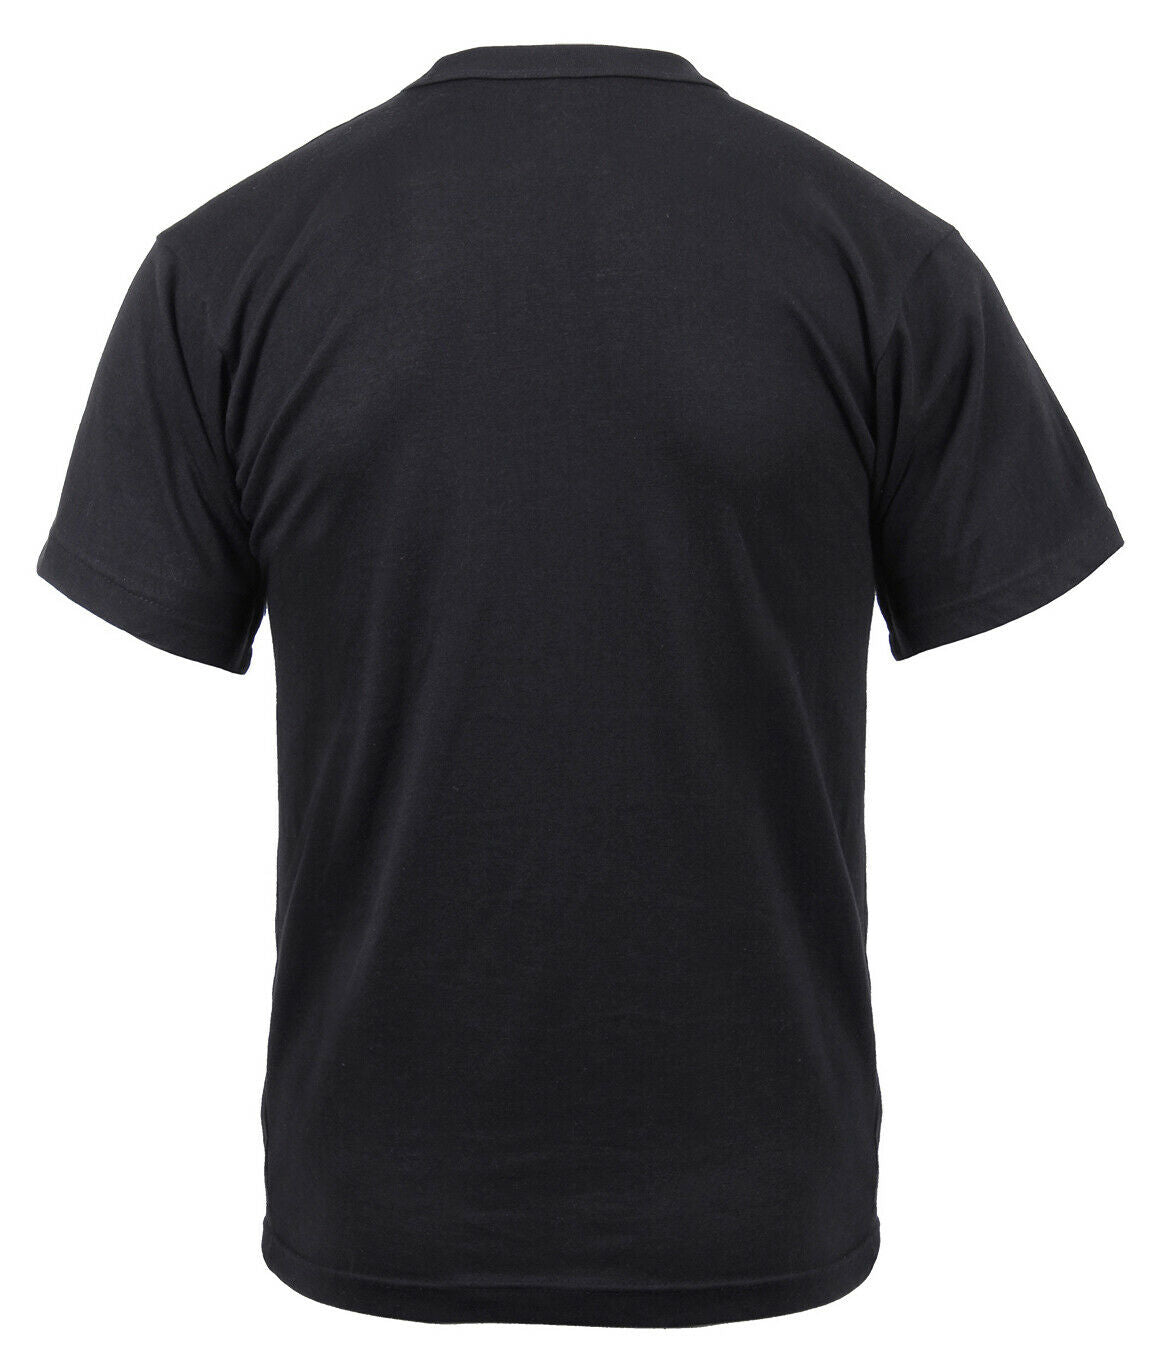 US Flag T-shirt Bearded Skull Design Shirt - Black